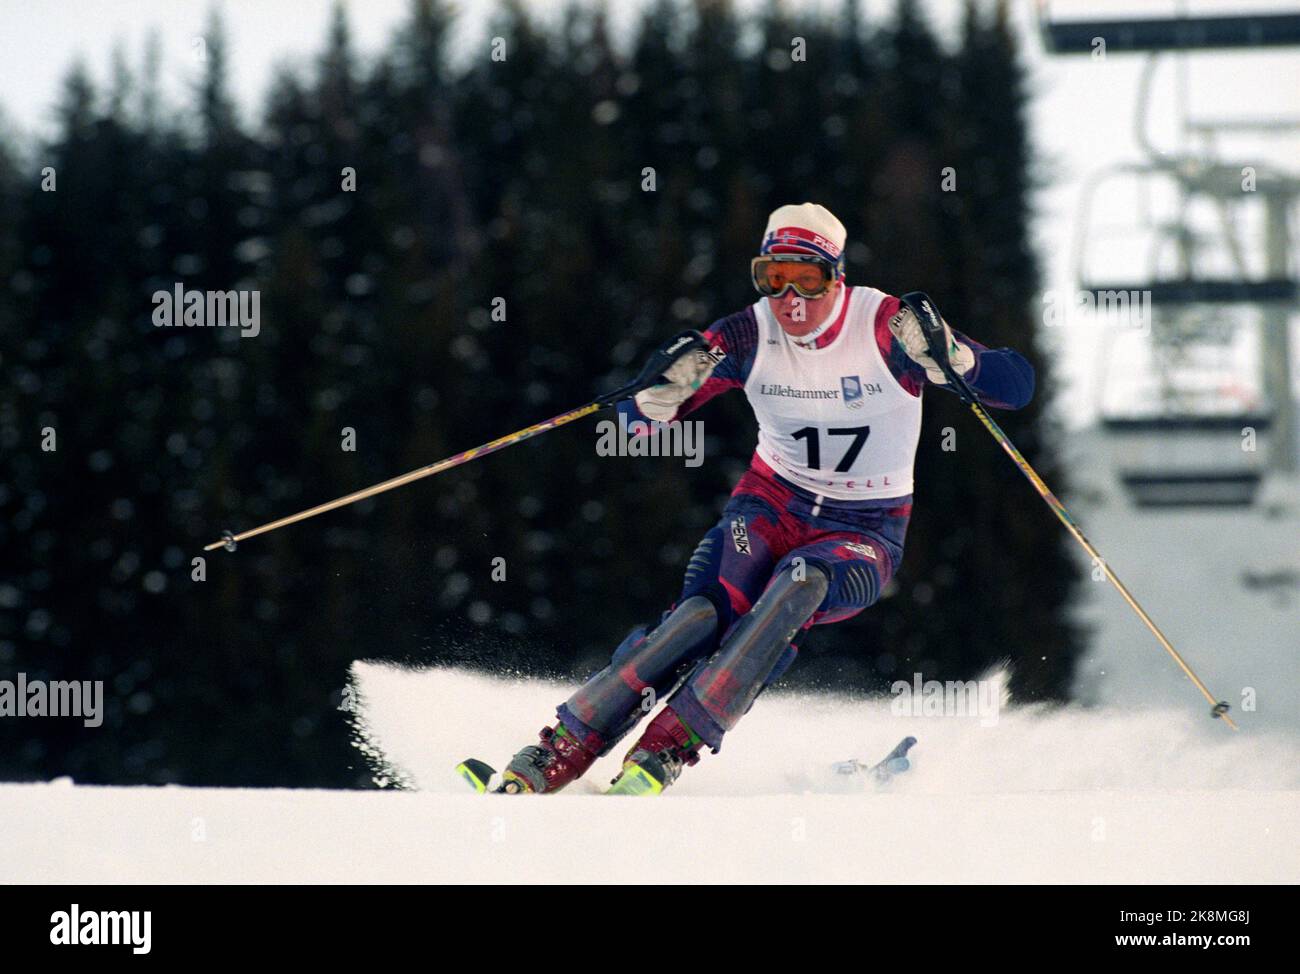 Hafjell 19940225. Olimpiadi invernali a Lillehammer Harald Chr. Strand Nilsen in azione sotto la combinazione maschile slalom a Hafjell. Ha vinto il bronzo. Foto: Calle Törnström / NTB Foto Stock